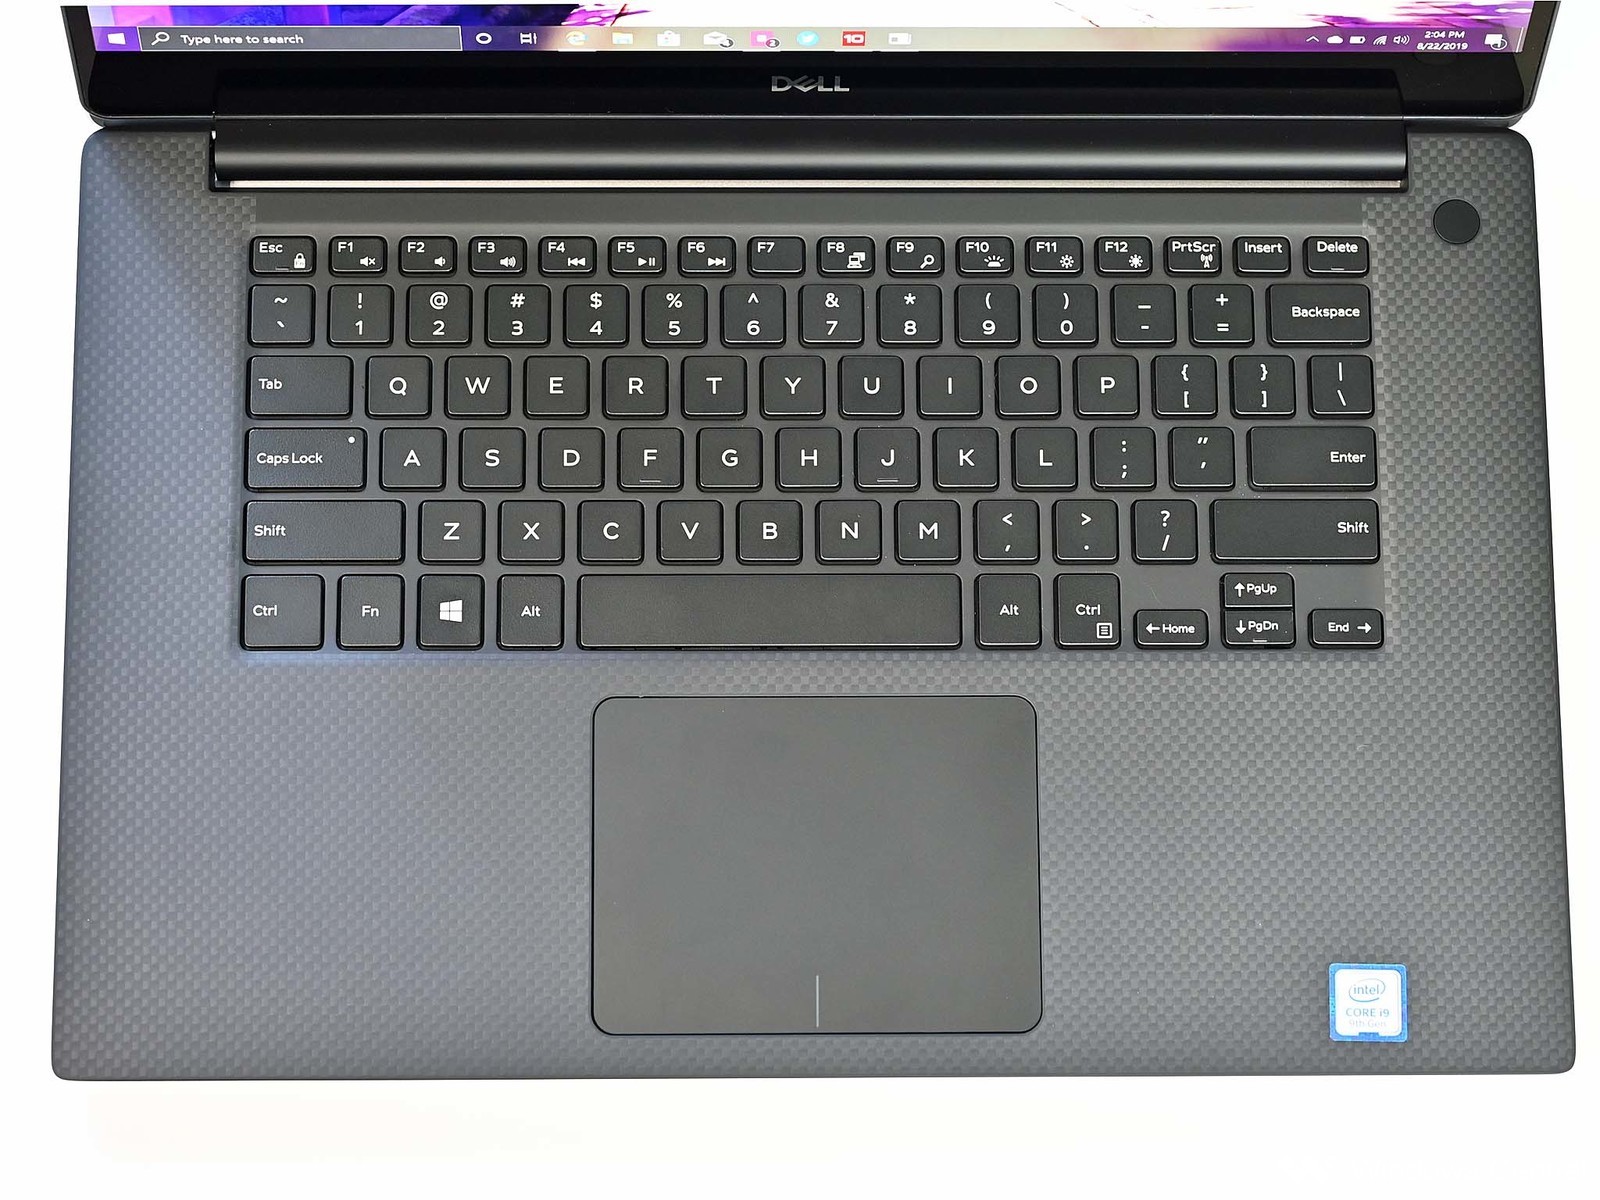 Dell Xps 7000 Keyboard - HD Wallpaper 